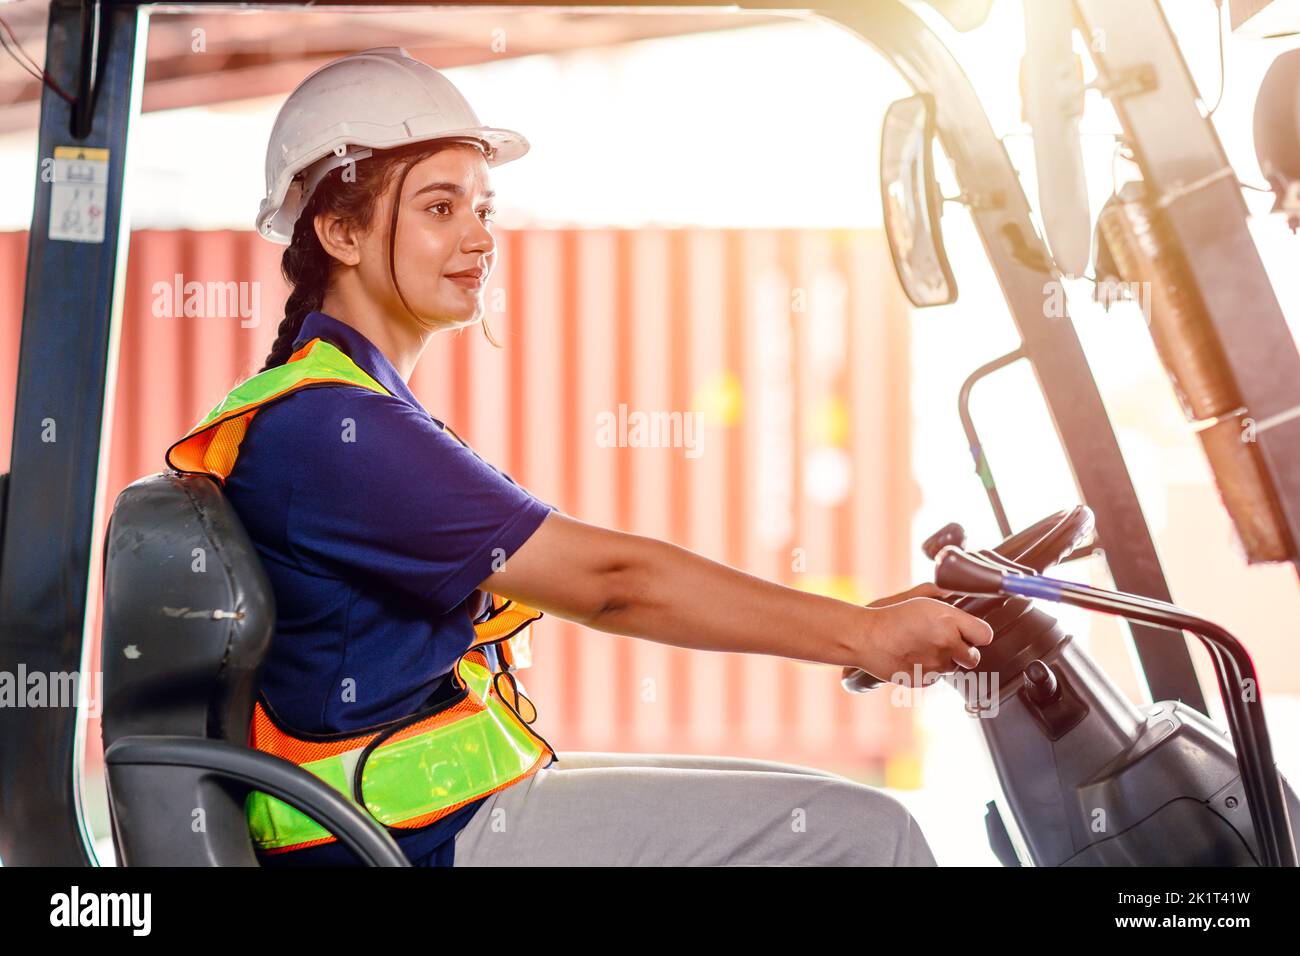 operatore carrello elevatore a forche femmina che lavora in un magazzino. Ritratto di giovane donna indiana conducente seduto in carrello elevatore e sorridente lavorando in grande magazzino Foto Stock